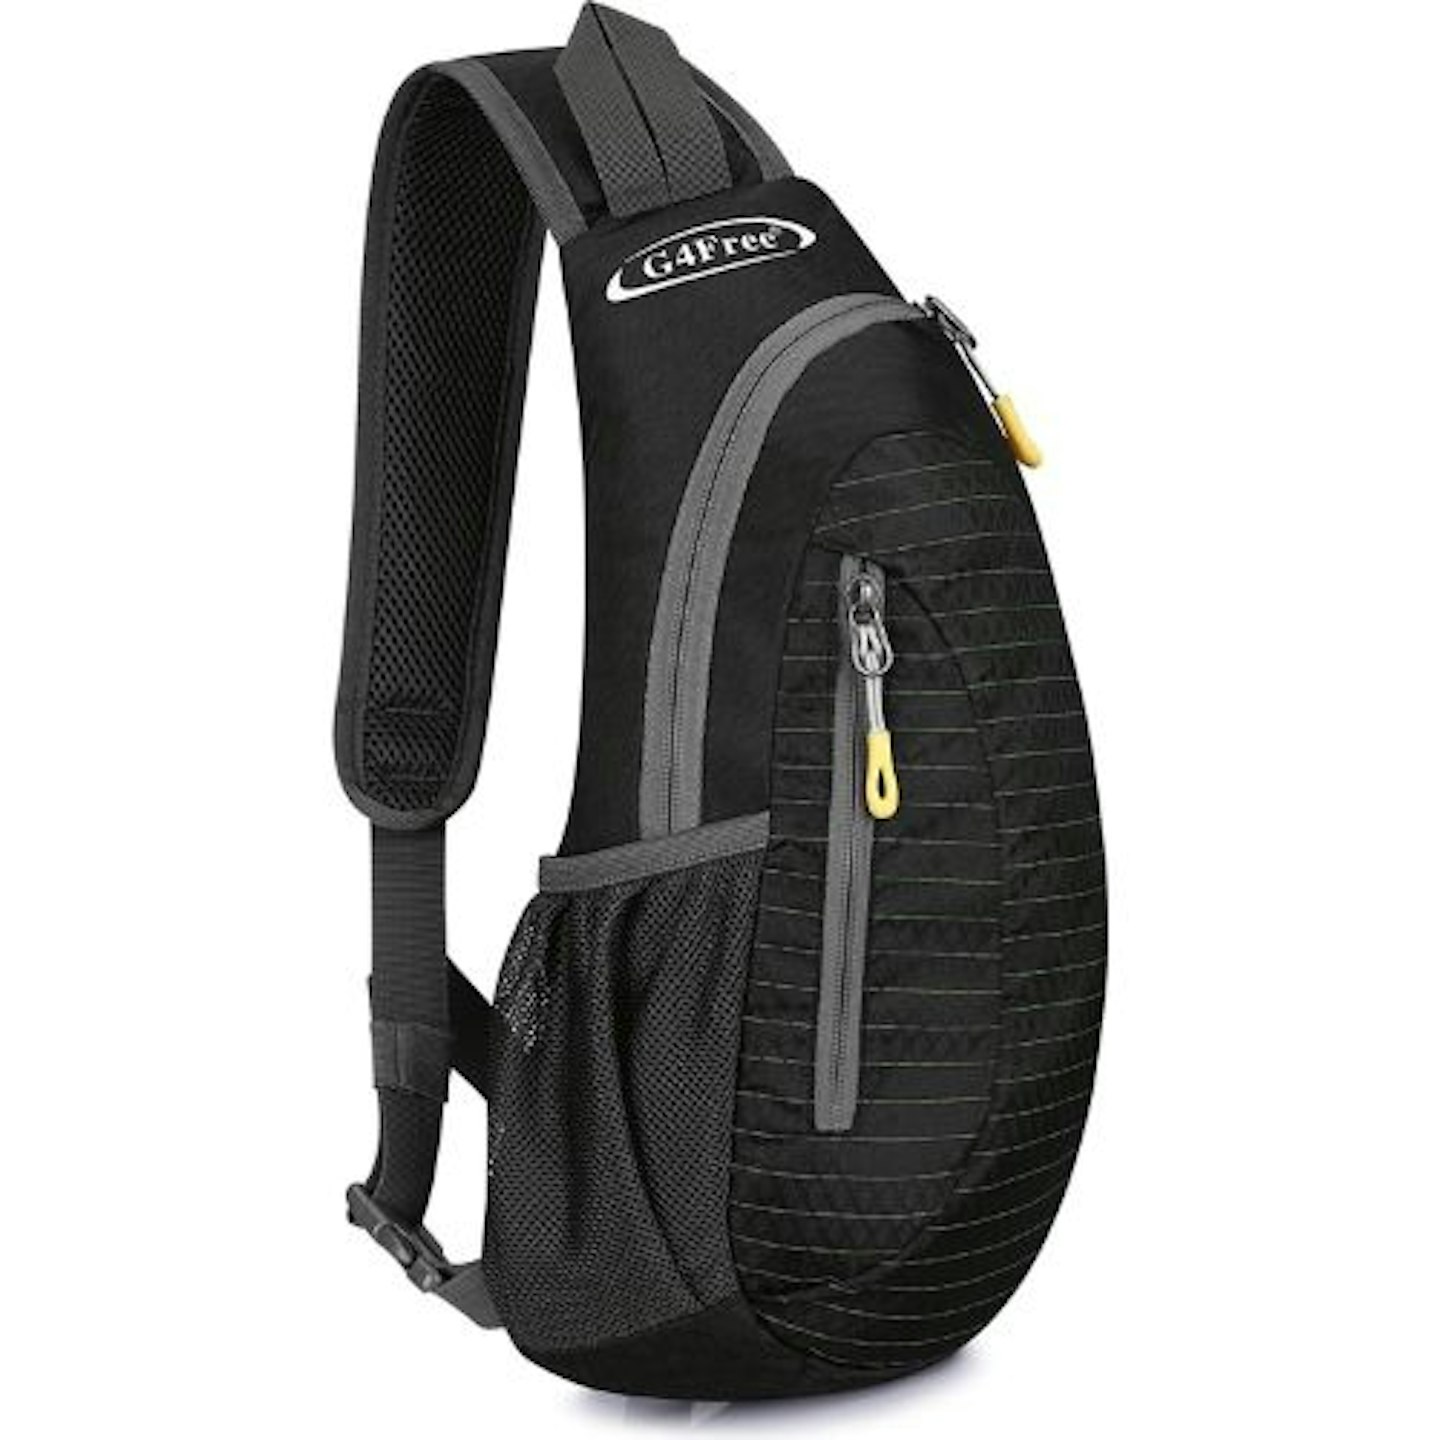 G4Free Small Sling Bag Shoulder Backpack